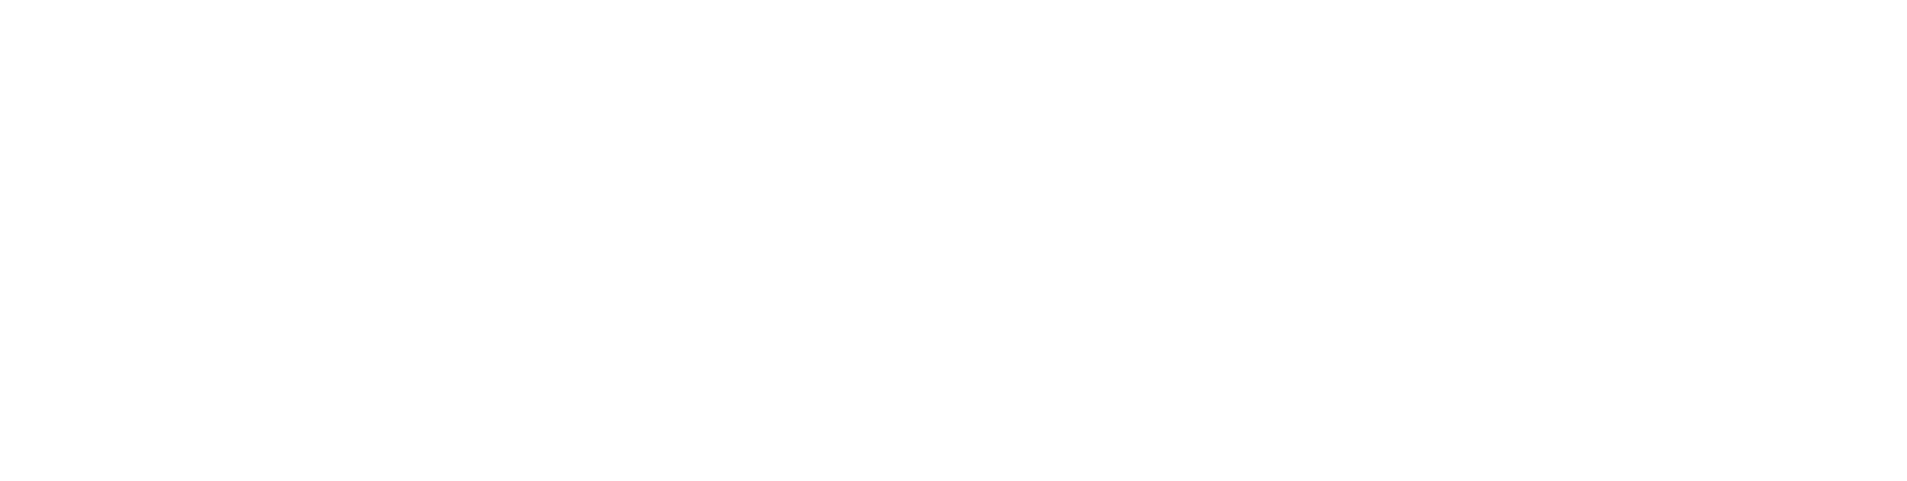 Ed Sheeran: The Sum of It All logo